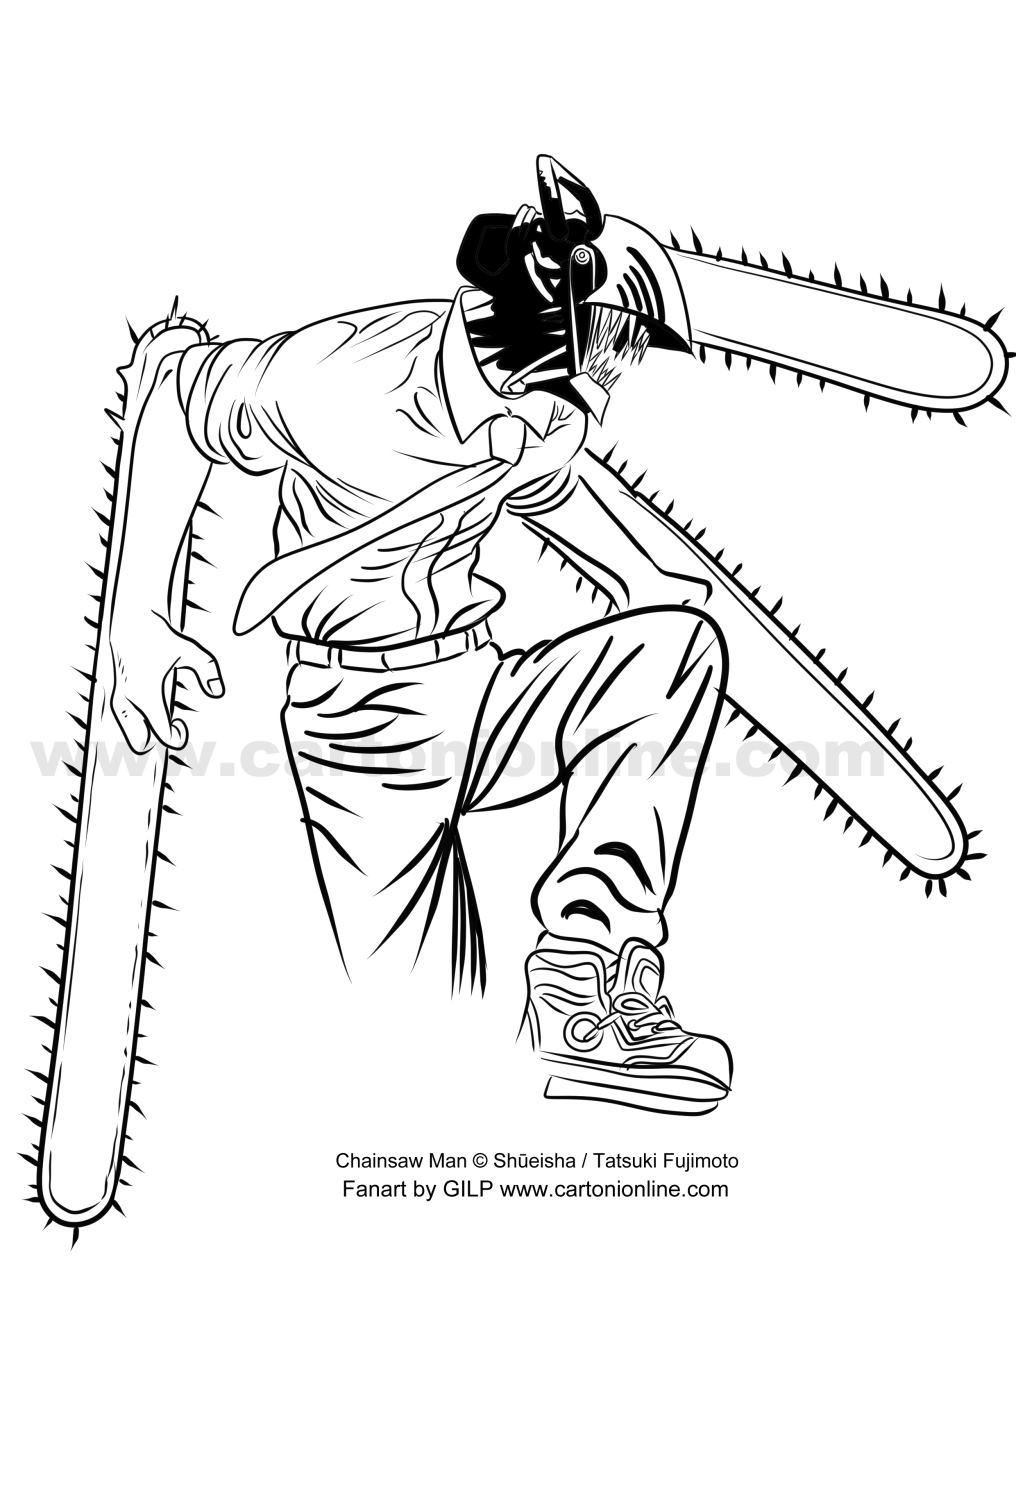 Disegno di Chainsaw Man di Chainsaw Man da stampare e colorare